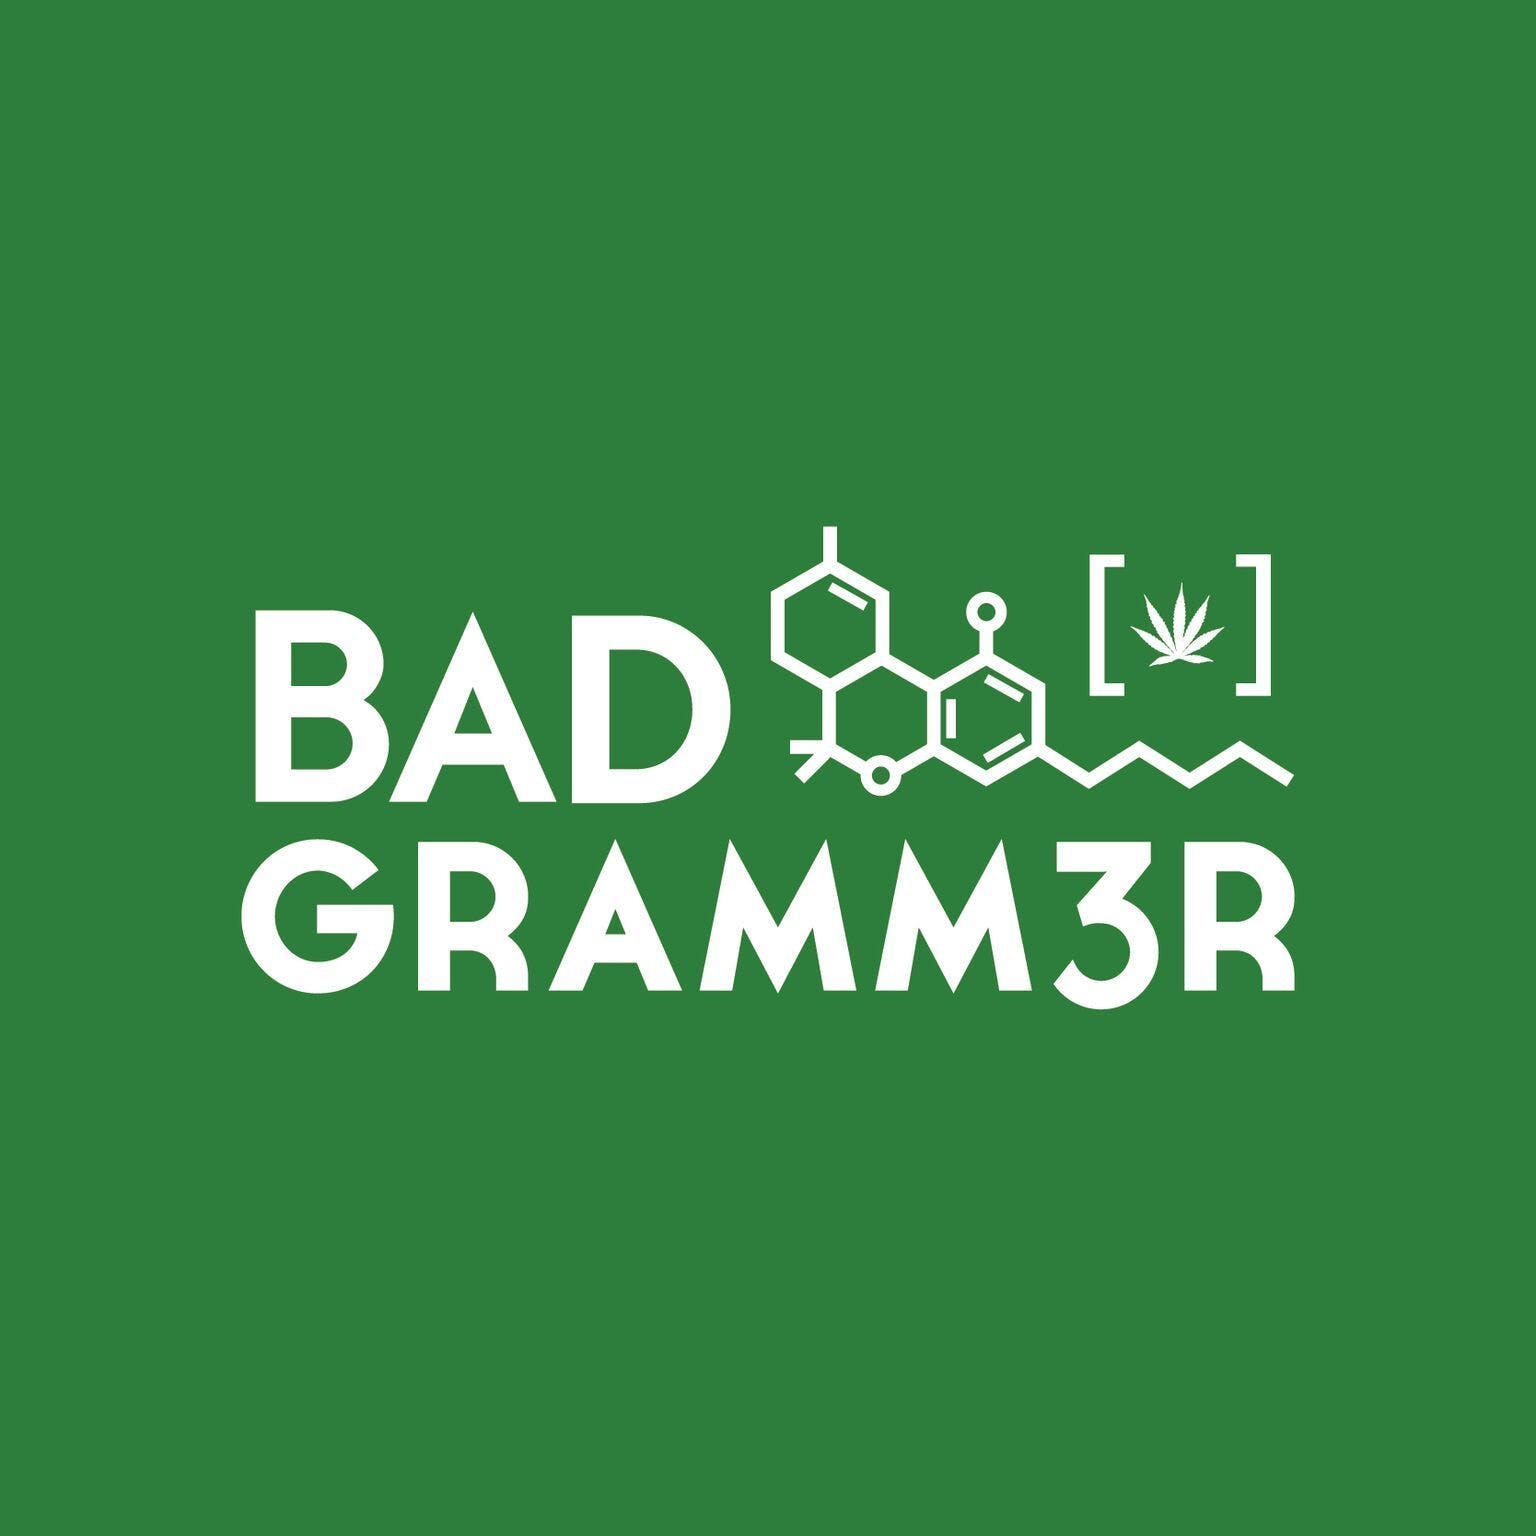 Bad Gramm3r - Medical Marijuana Doctors - Cannabizme.com